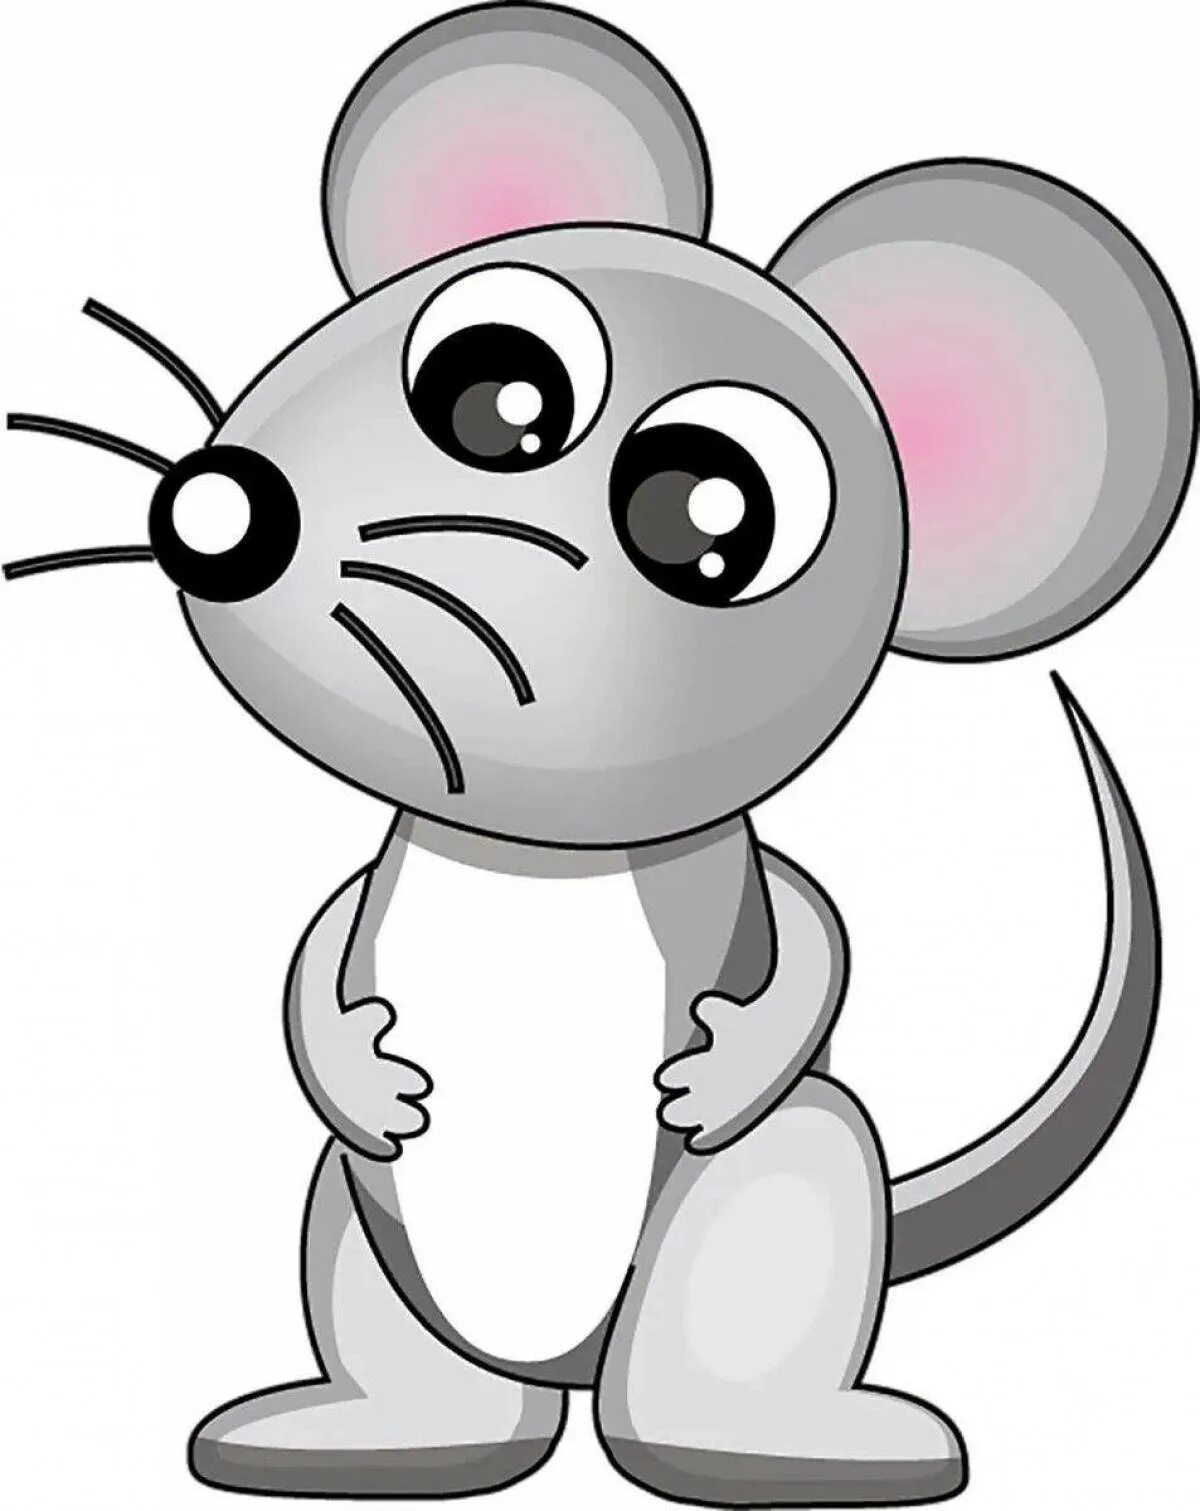 Картинка мышки. Мышка картинка. Мышь рисунок. Мышка картинка для детей. Мышь рисунок для детей.